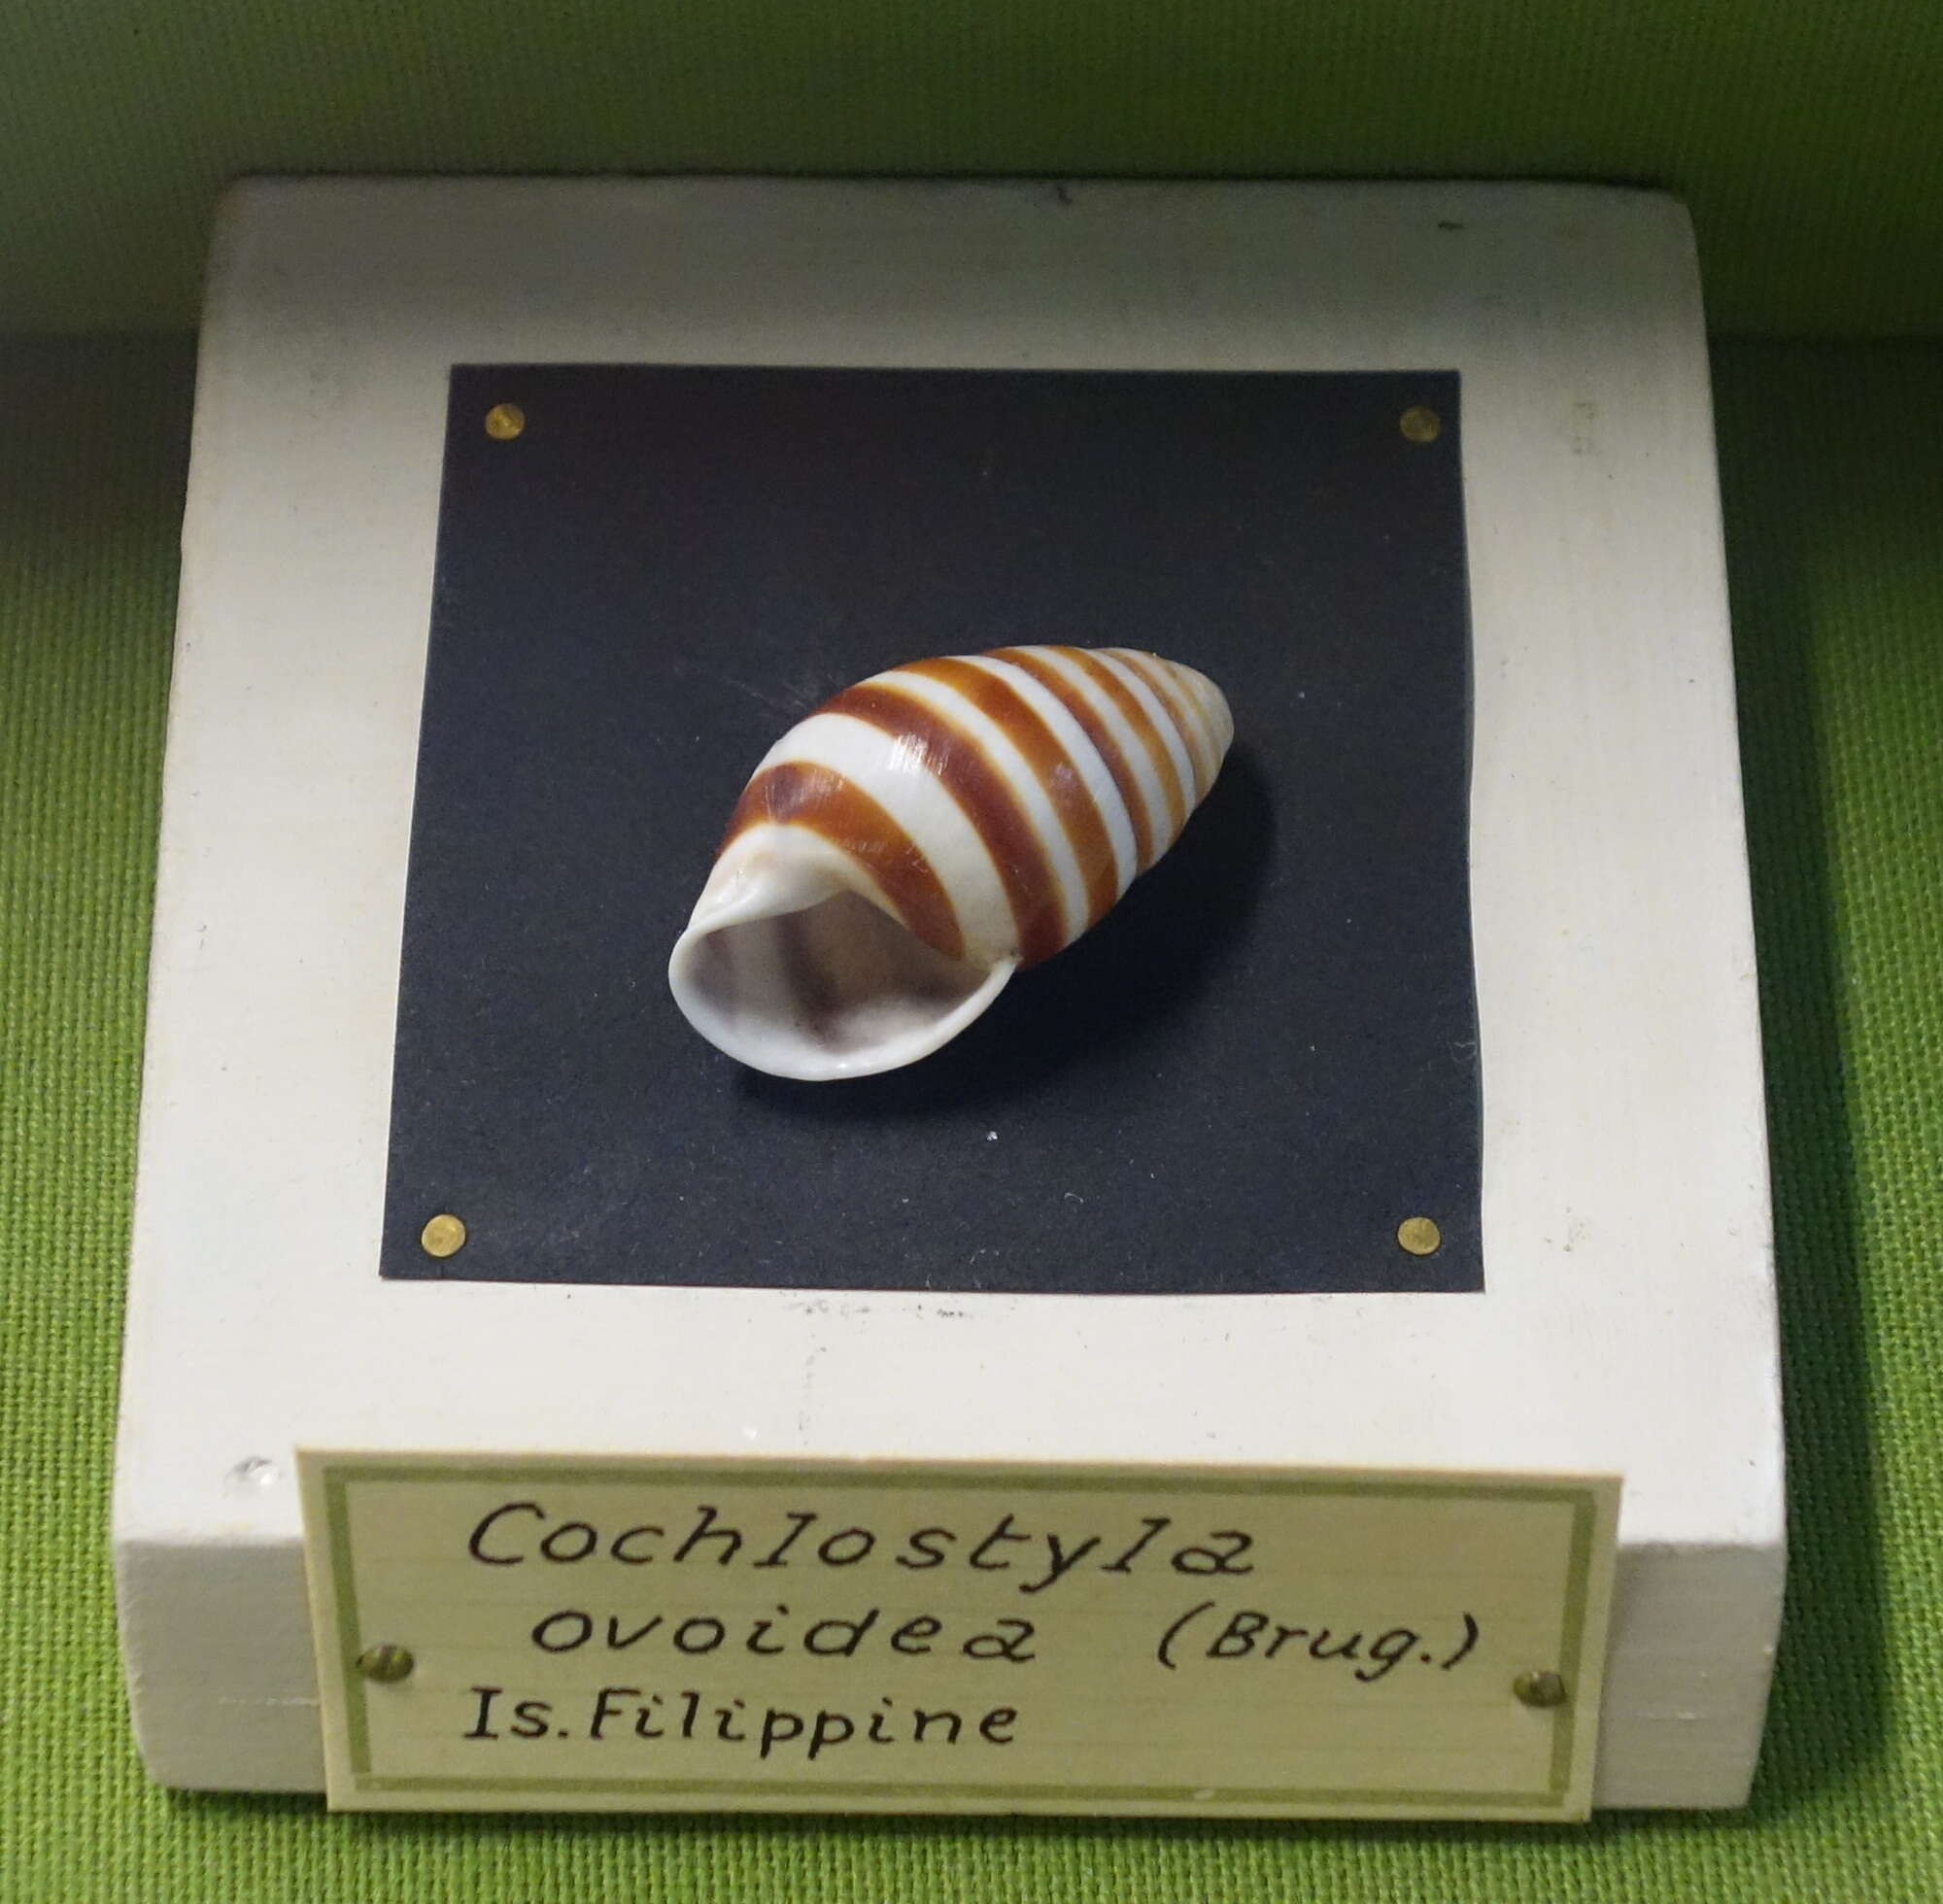 Image of Cochlostyla ovoidea